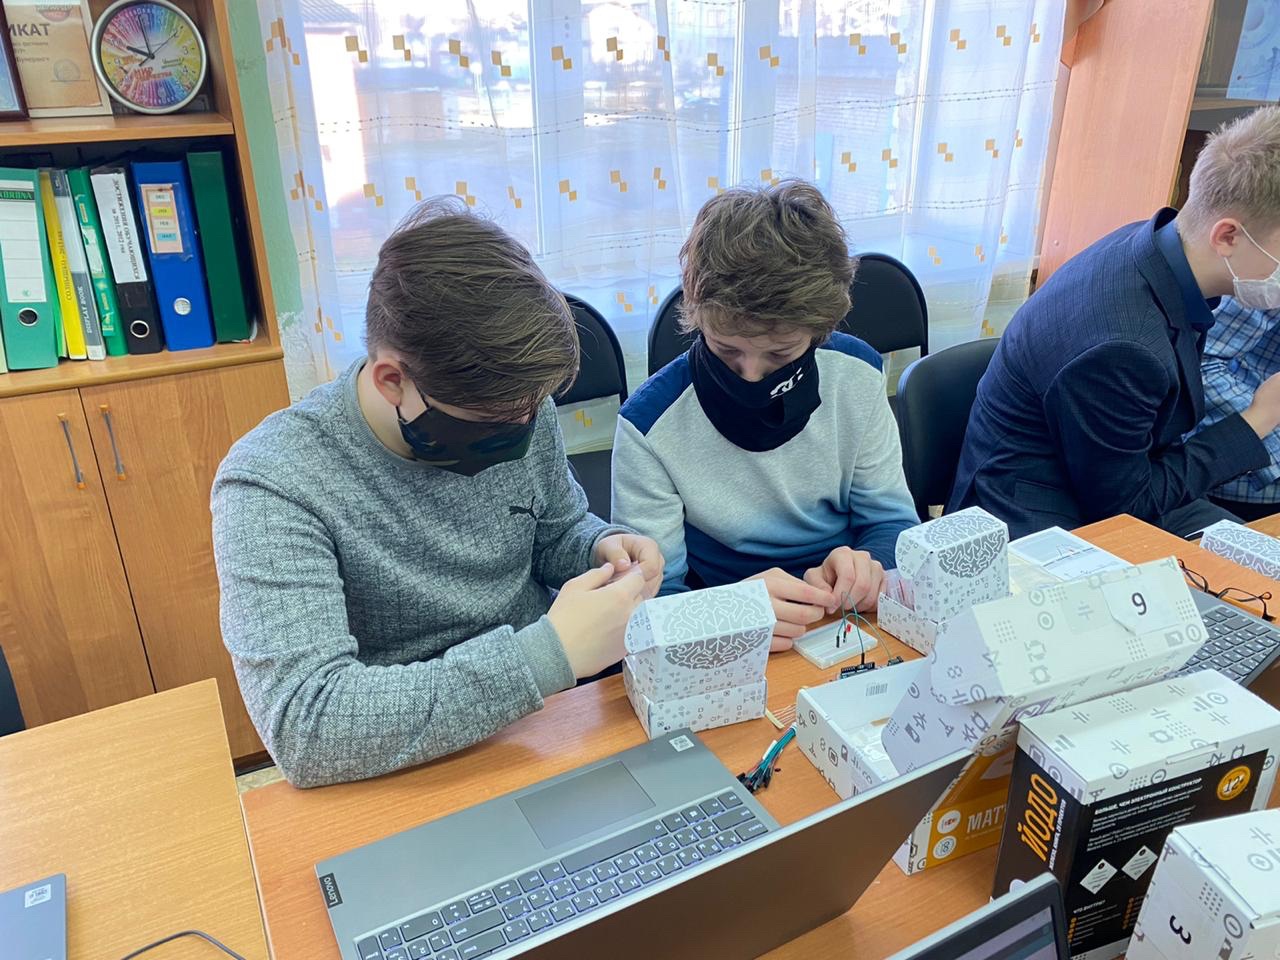 Ярославский детский технопарк впервые прибыл в Некрасовский район